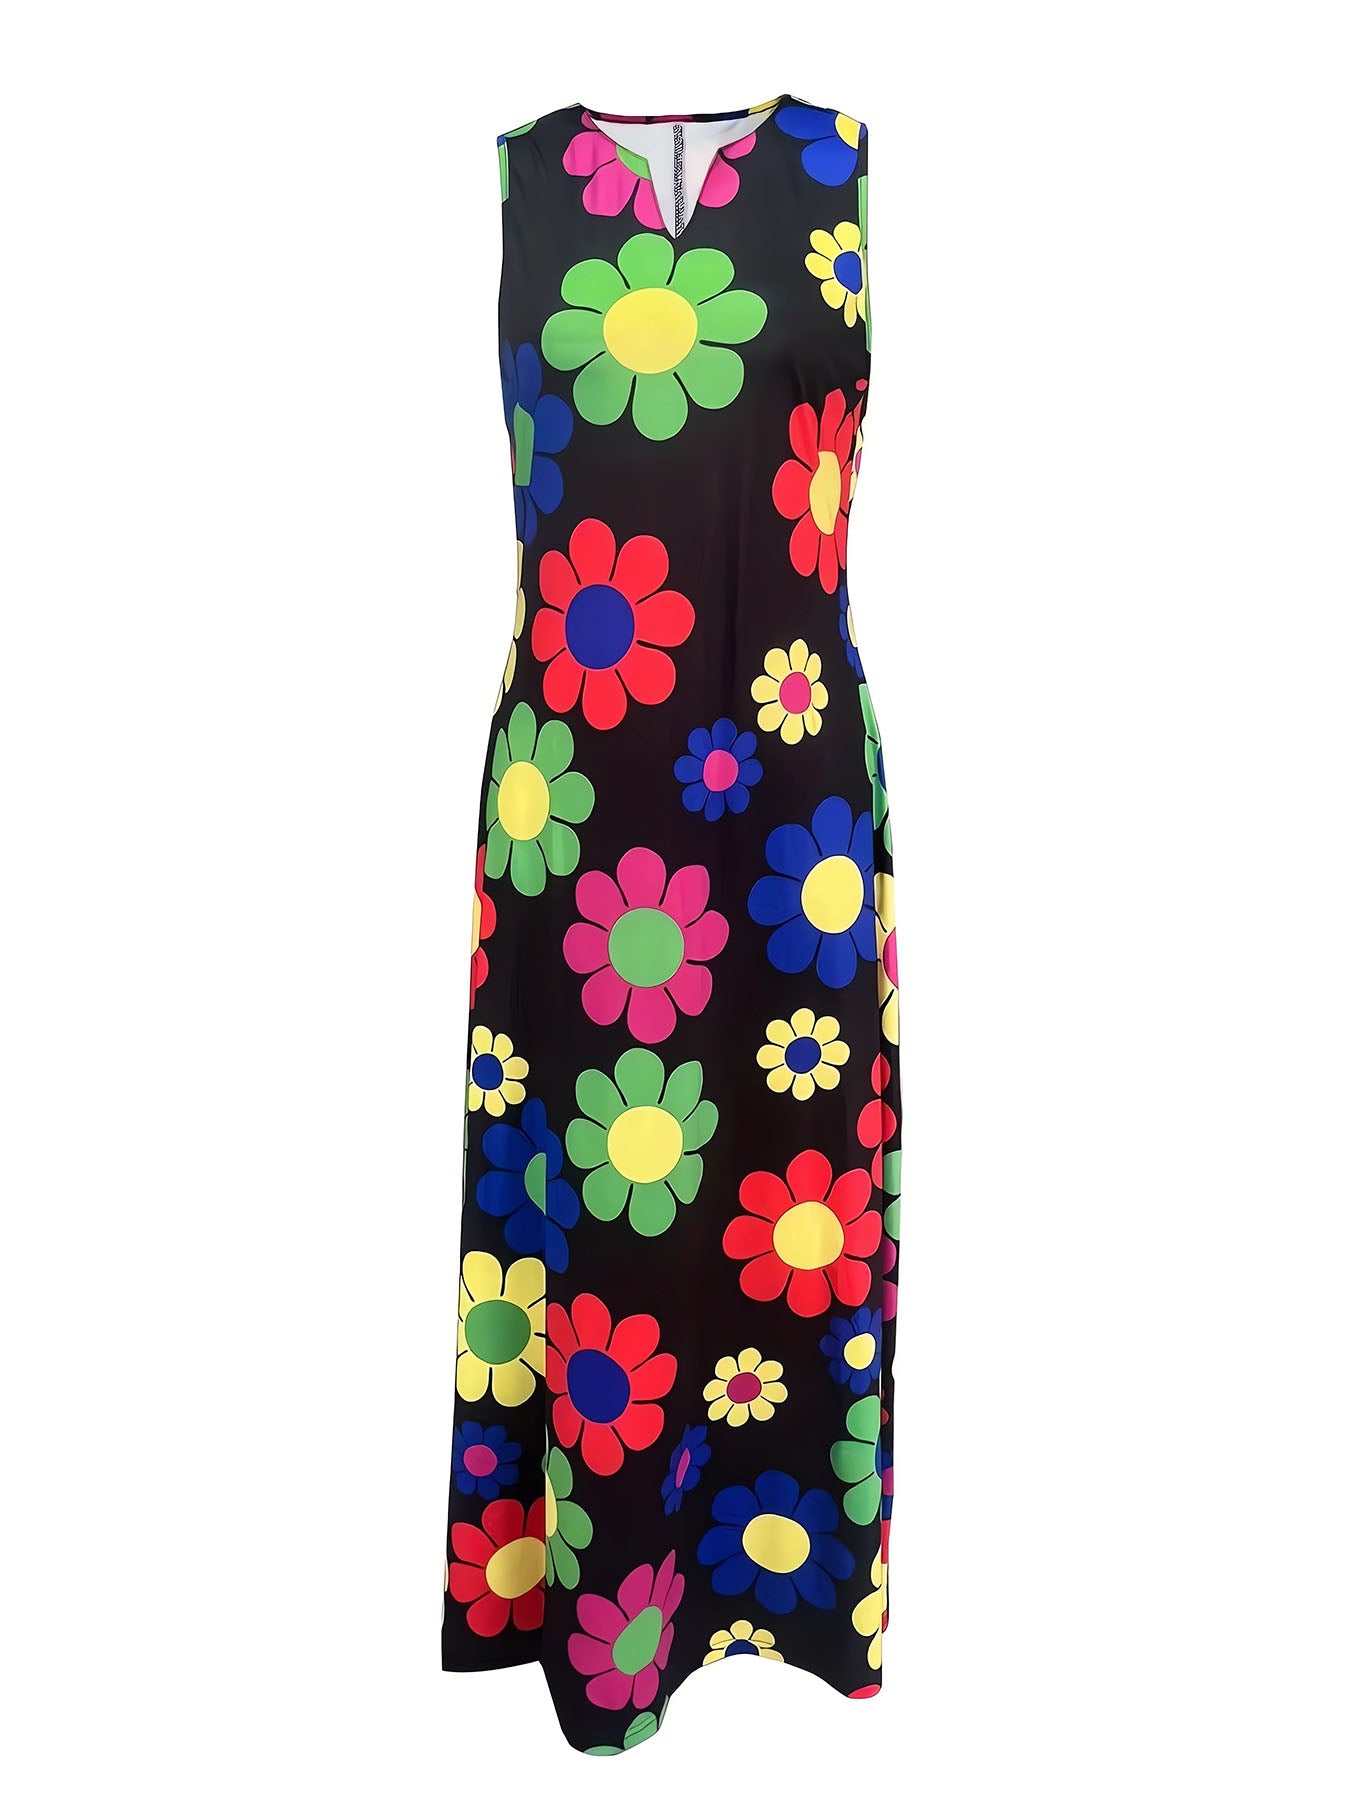 Vorioal Floral Maxi Comfort Dress